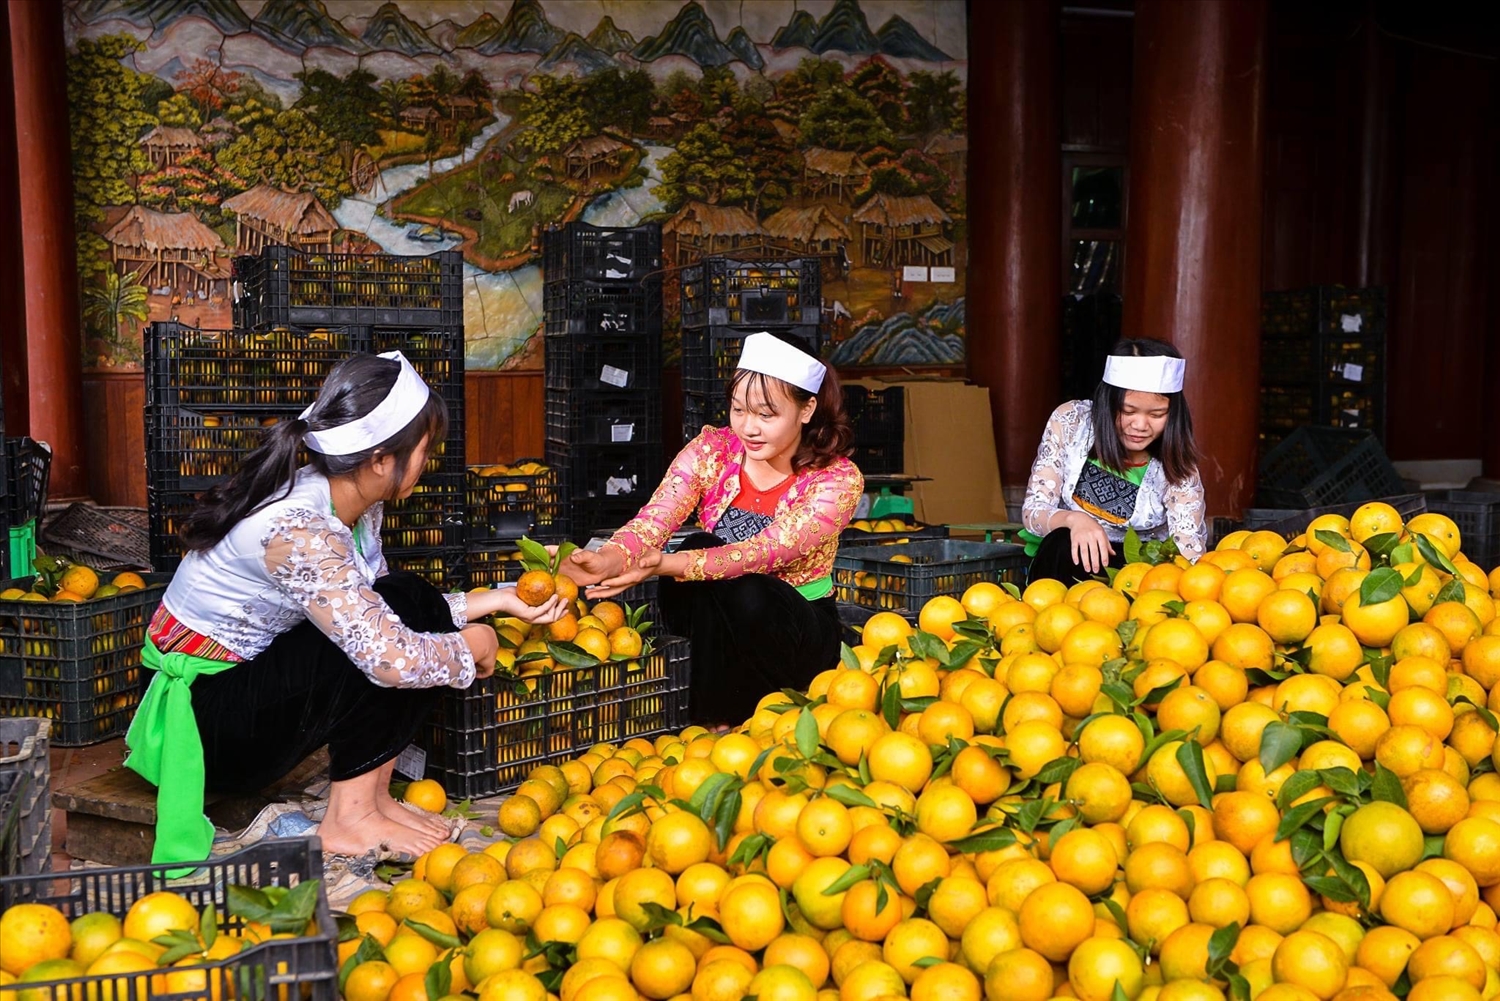 Nhiều mô hìnhsản xuất nông nghiệp đã góp phần thúc đẩy phát triển kinh tế - xã hội vùng DTTS tỉnh Hoà Bình.